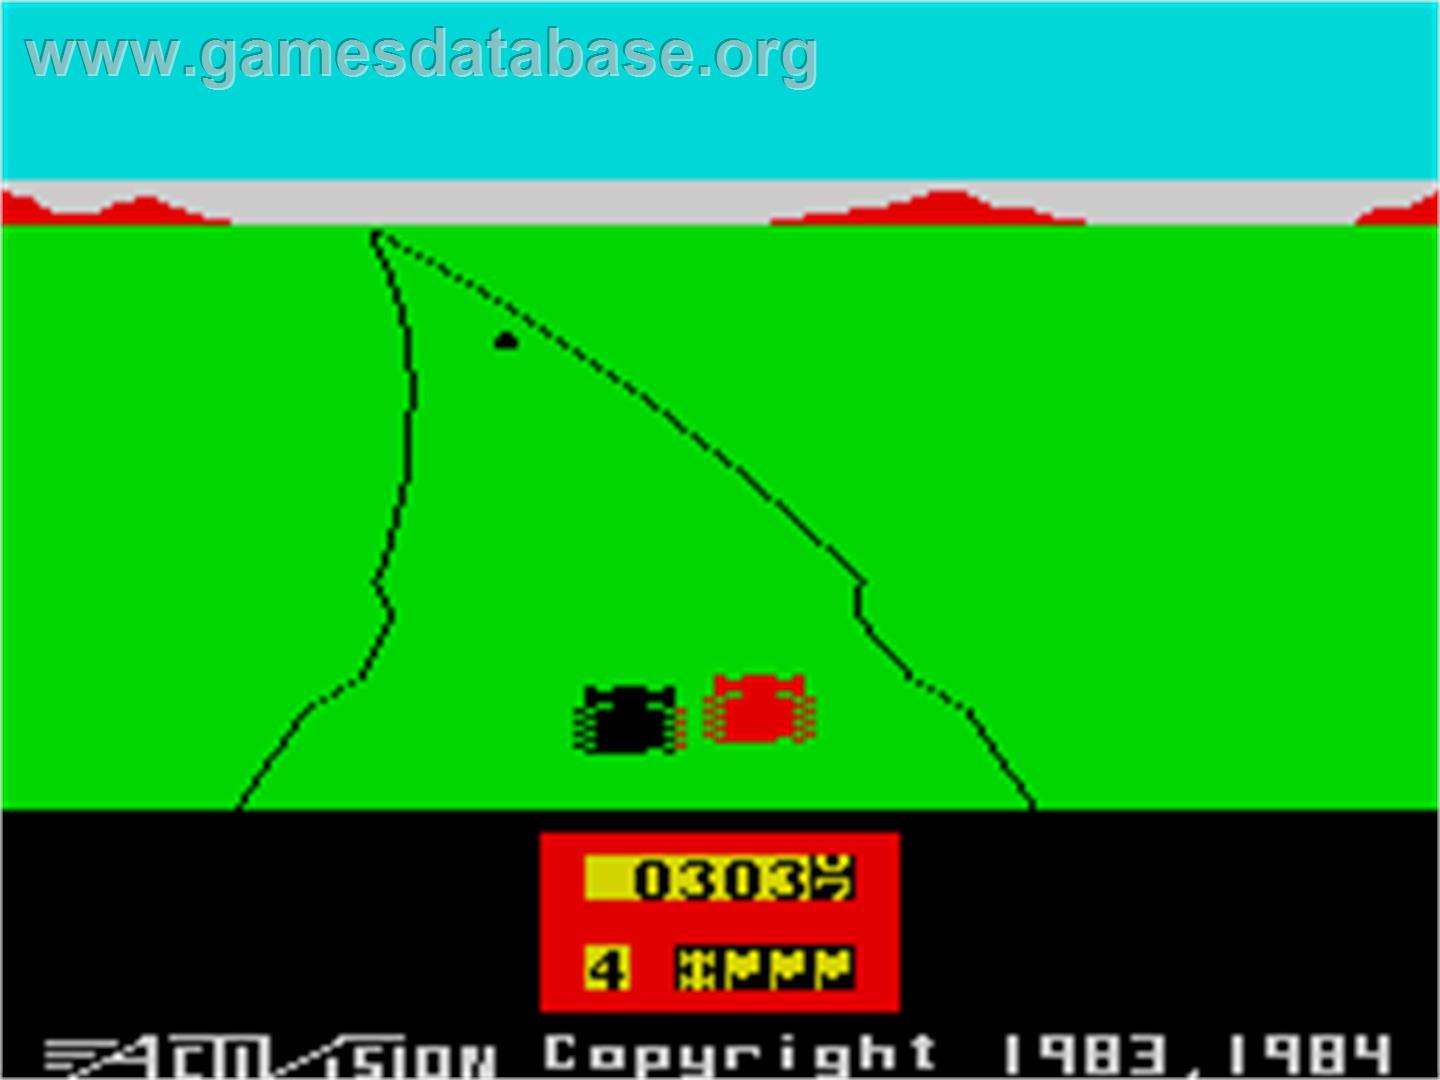 Enduro - Sinclair ZX Spectrum - Artwork - In Game